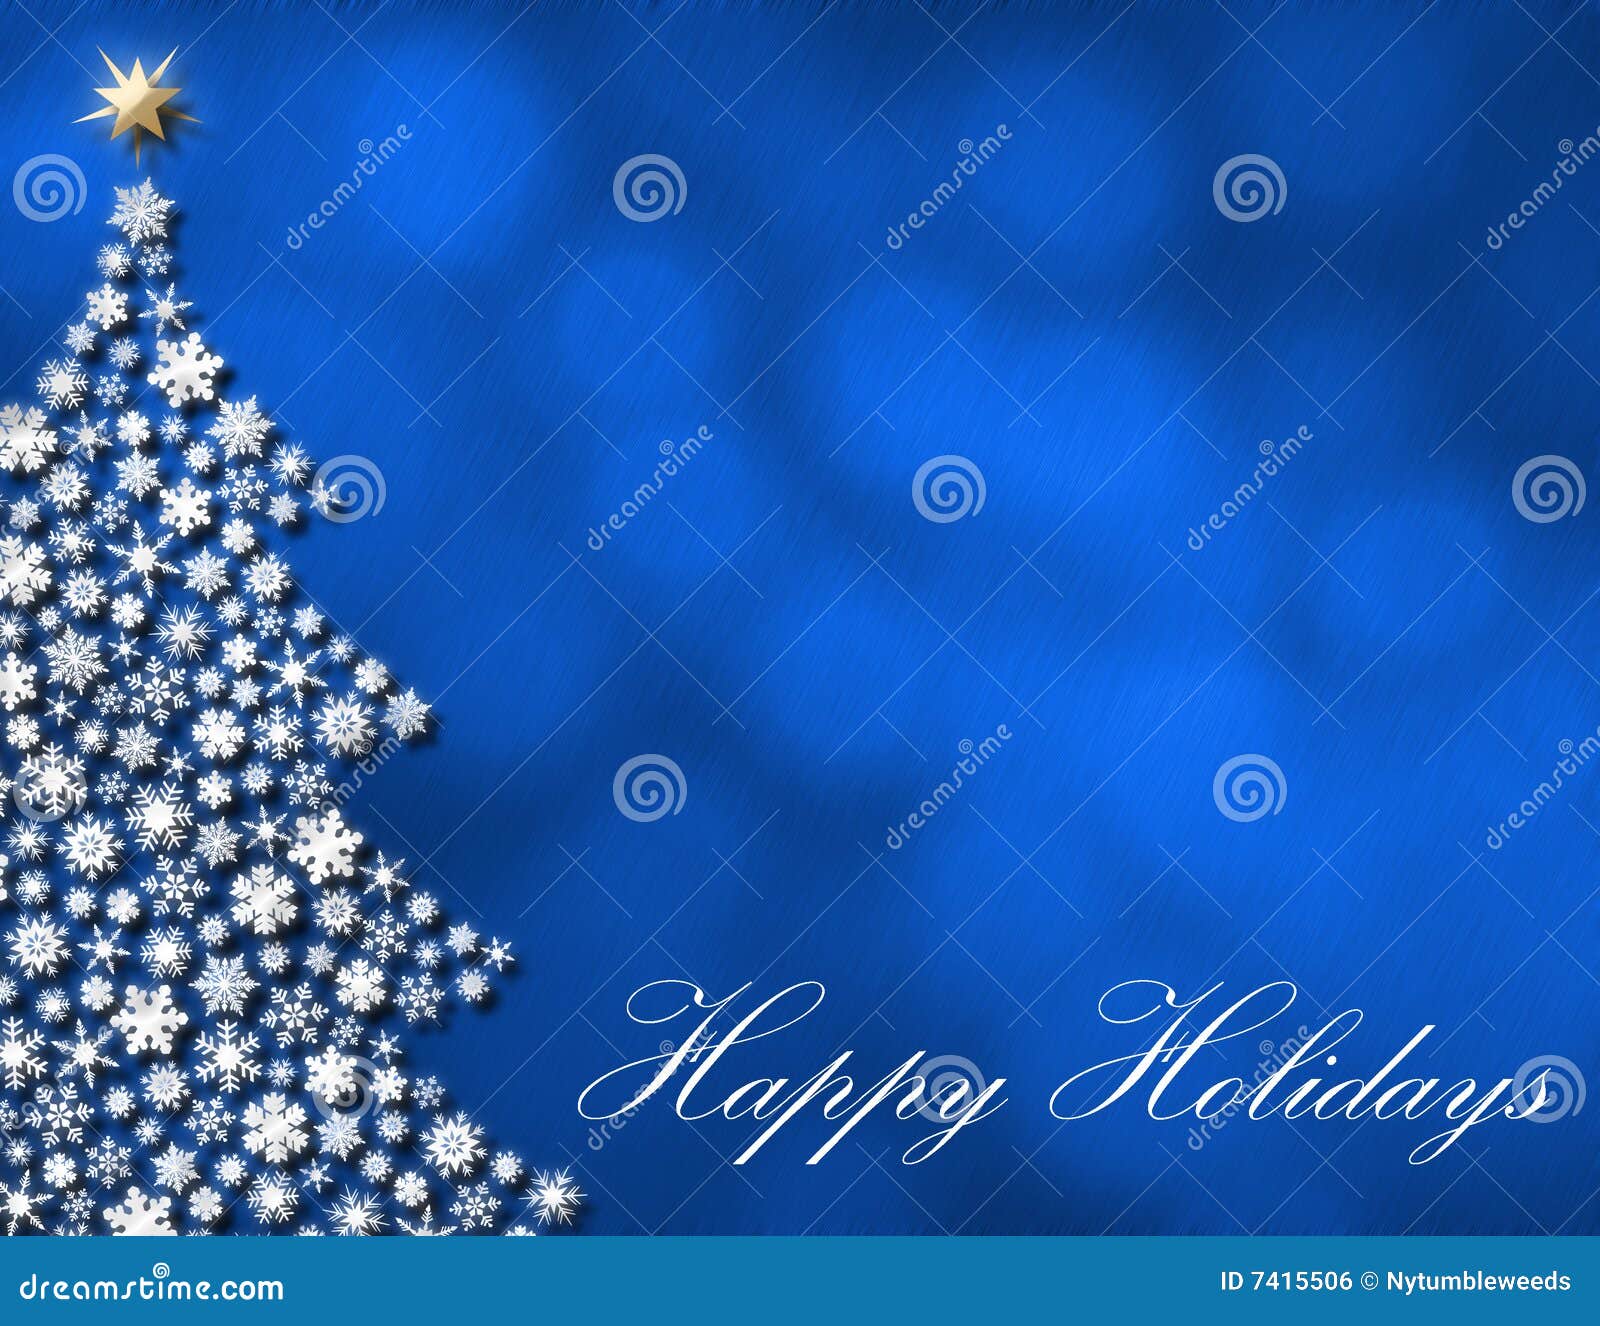 Elegant Happy Holidays Background Royalty Free Stock Image 